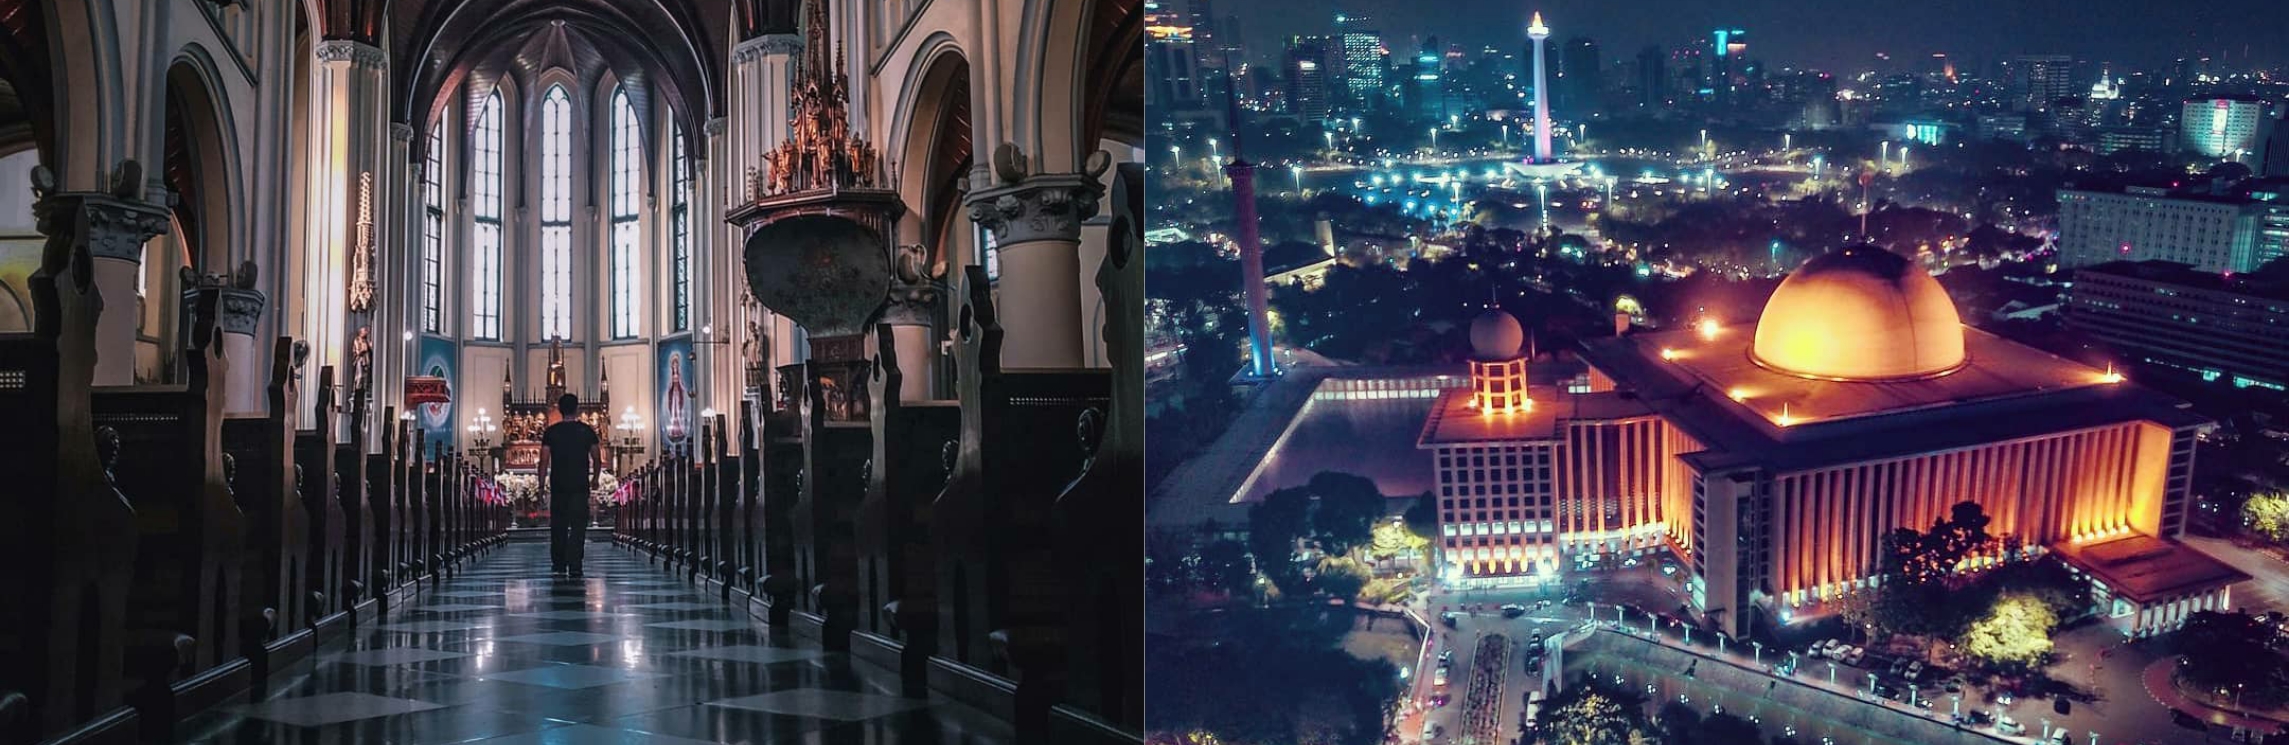 5 Destinasi wisata religi di Jakarta yang bisa dikunjungi akhir tahun